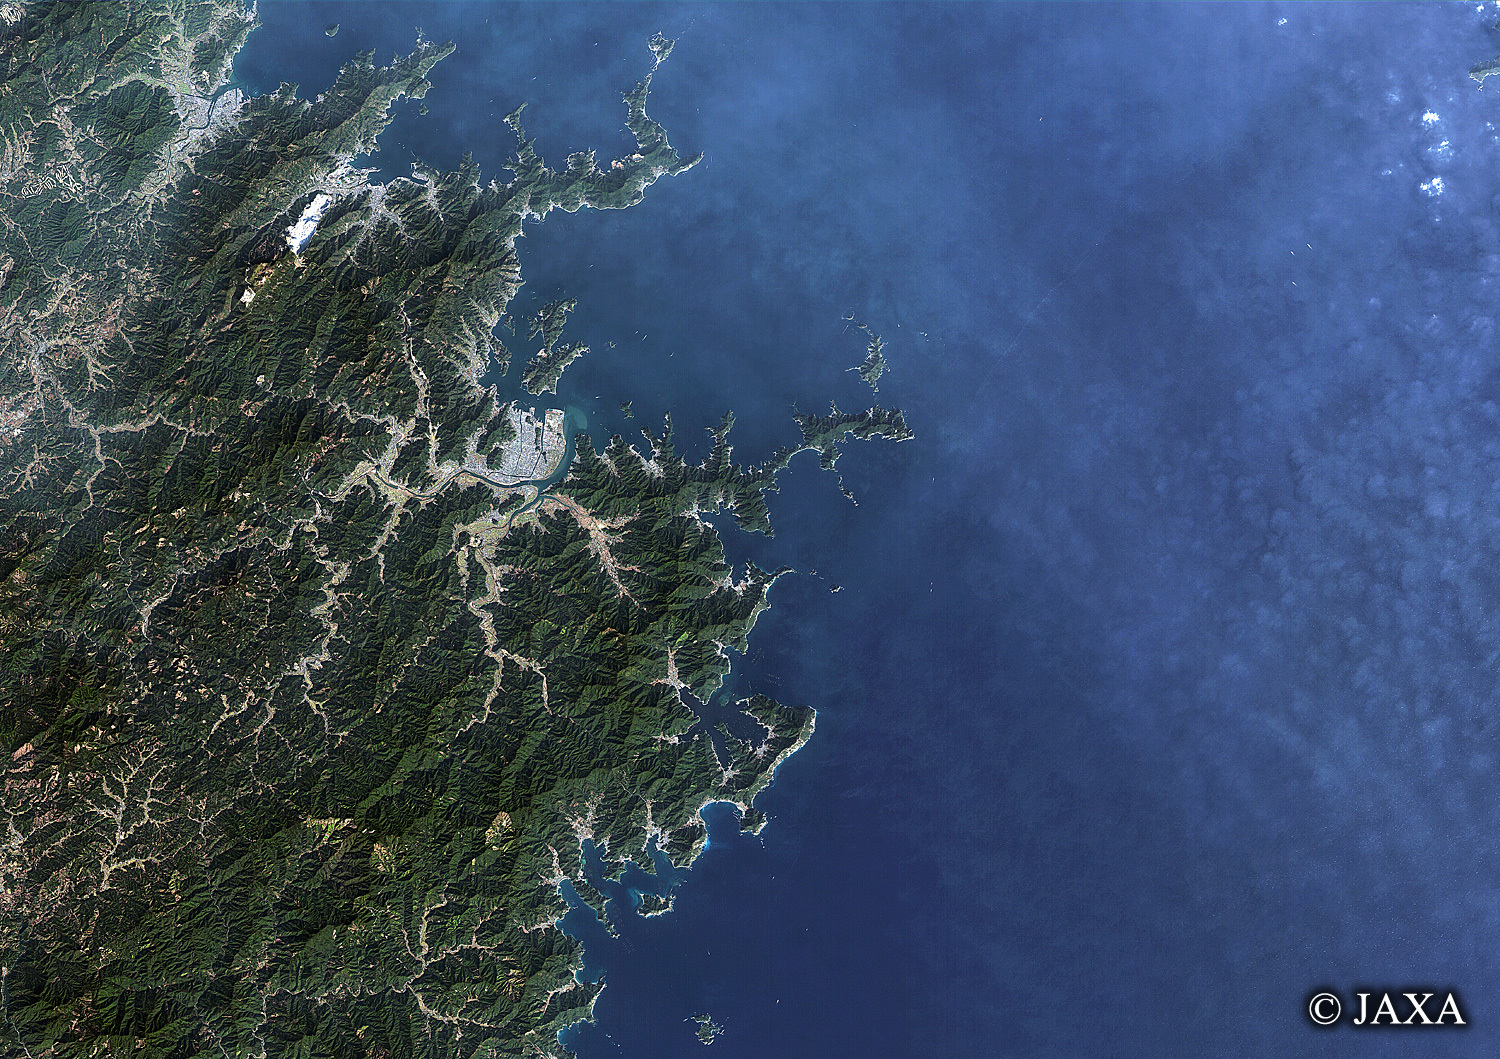 だいちから見た日本の都市 佐伯湾:衛星画像